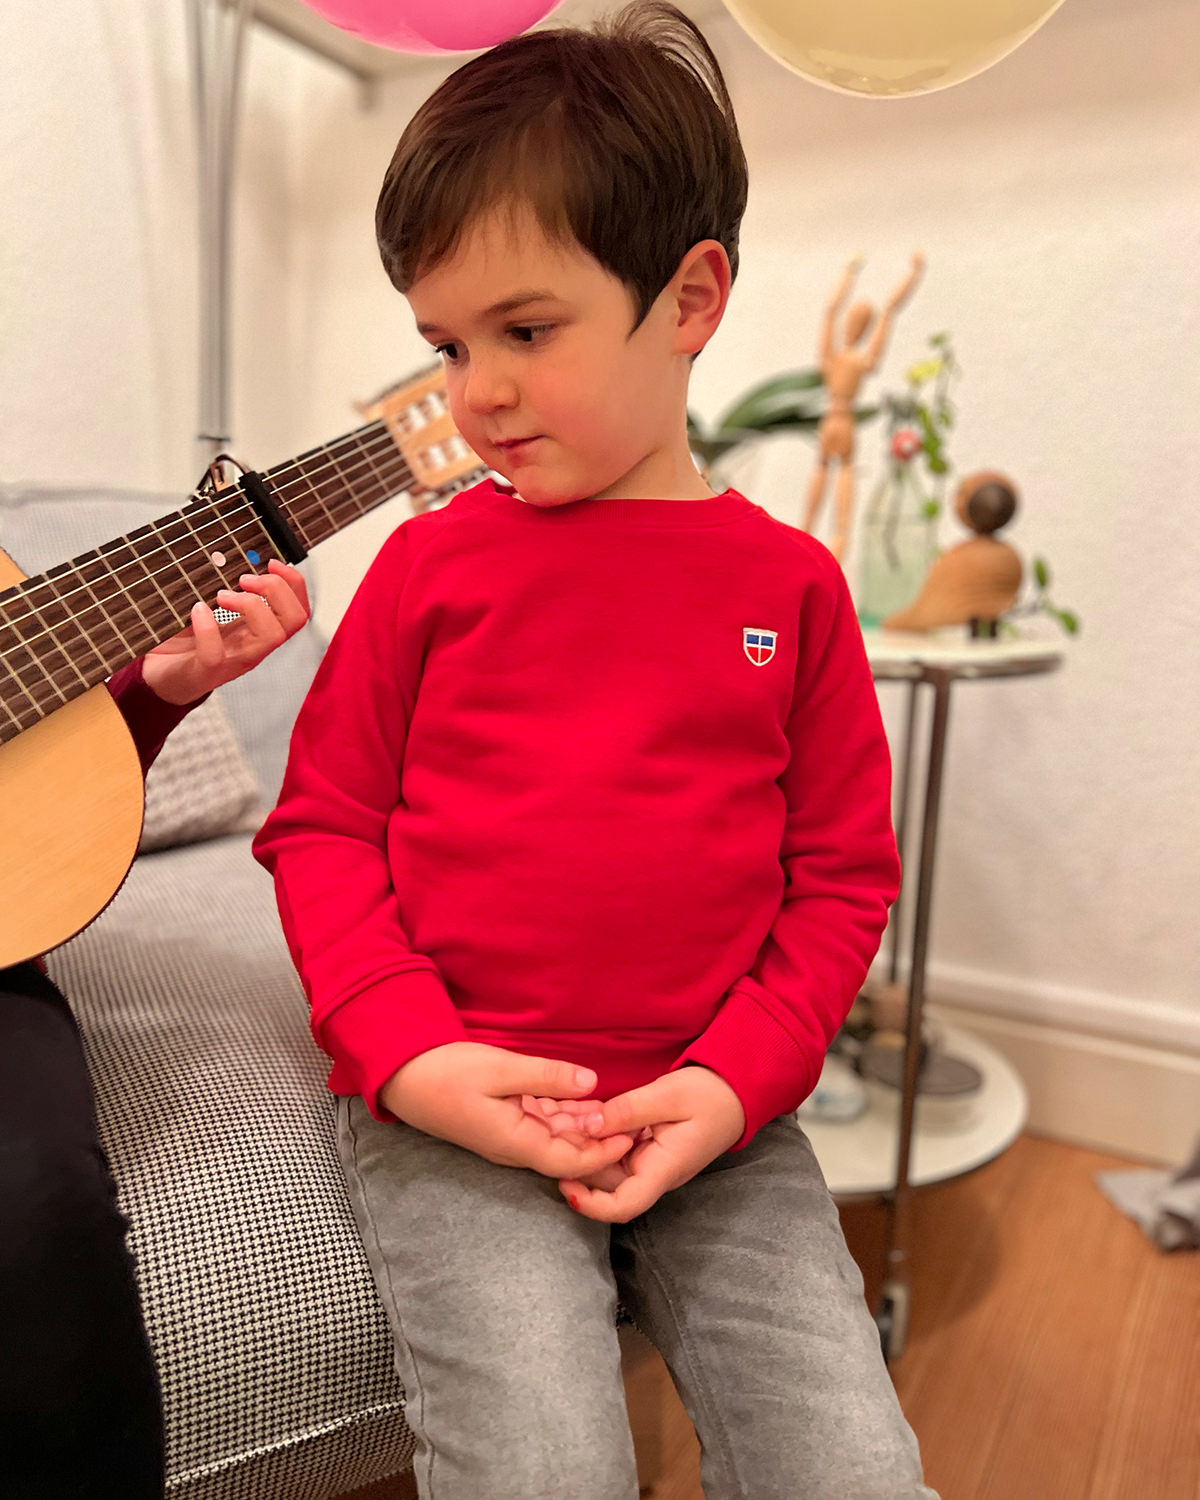 Wir sehen Anton, 5 Jahre alt in unserem Kinder Pullover Tom mit Saarland Wappen auf der linken Brust. Er schaut beeindruckt seiner Schwester beim Gitarrenspielen zu.